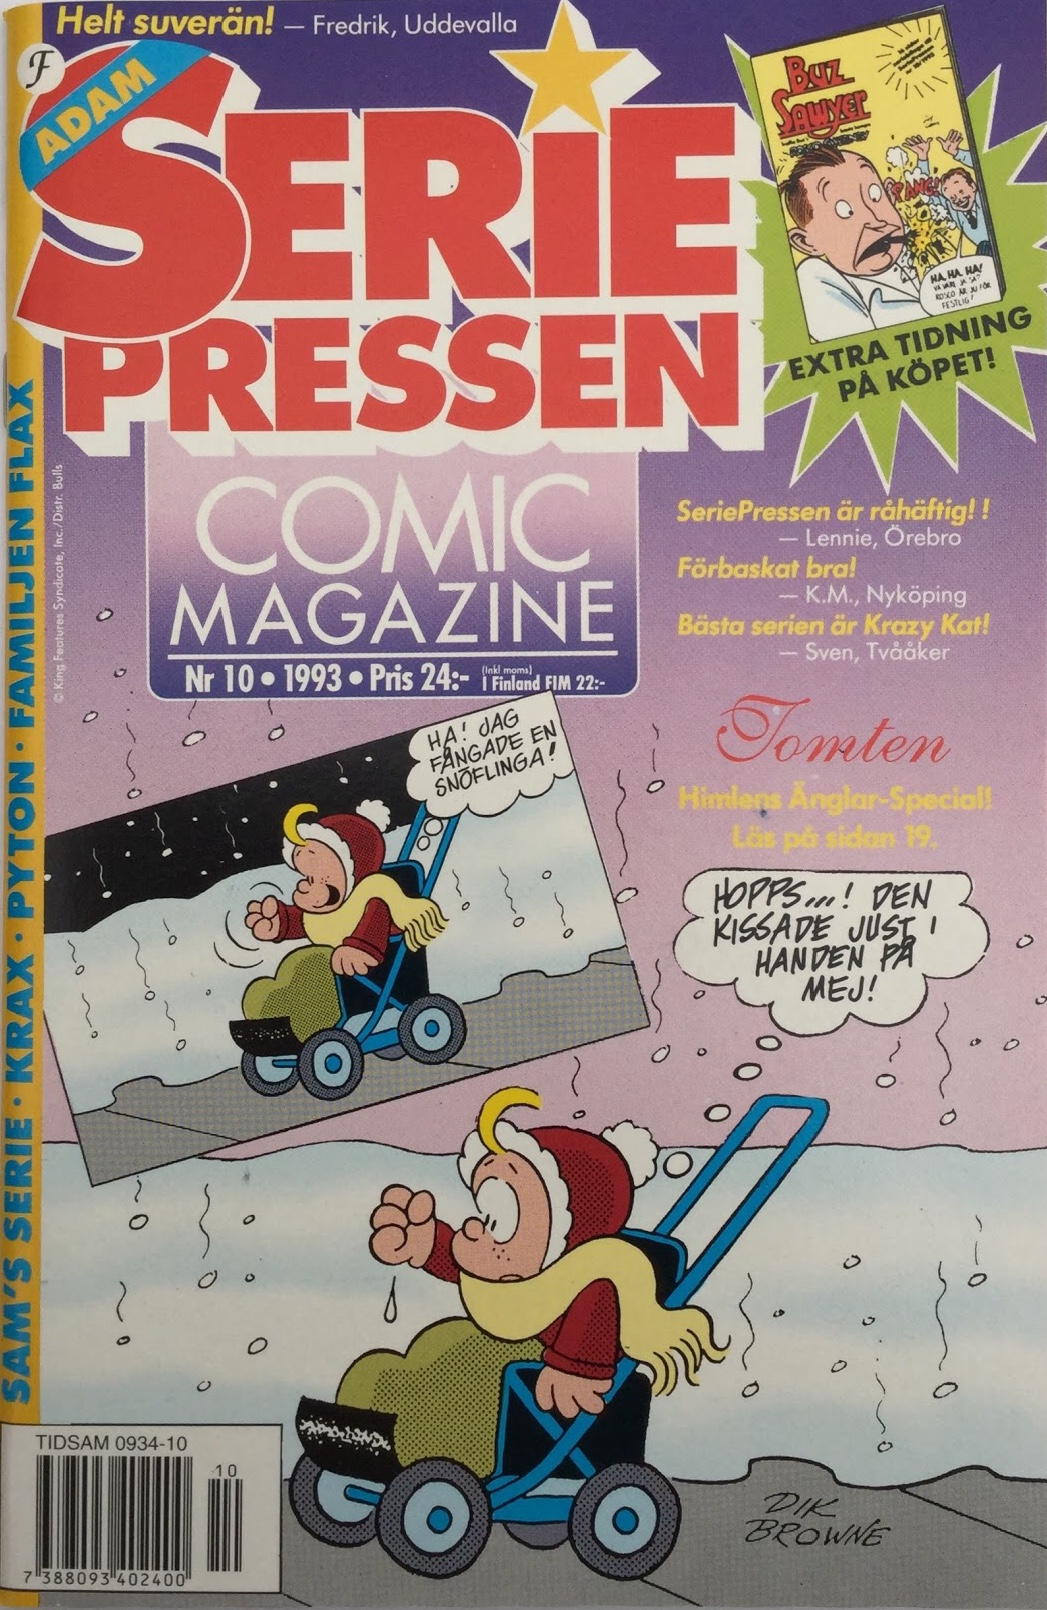 SeriePressen nr 10, 1993 från Formatic Press 1993-94